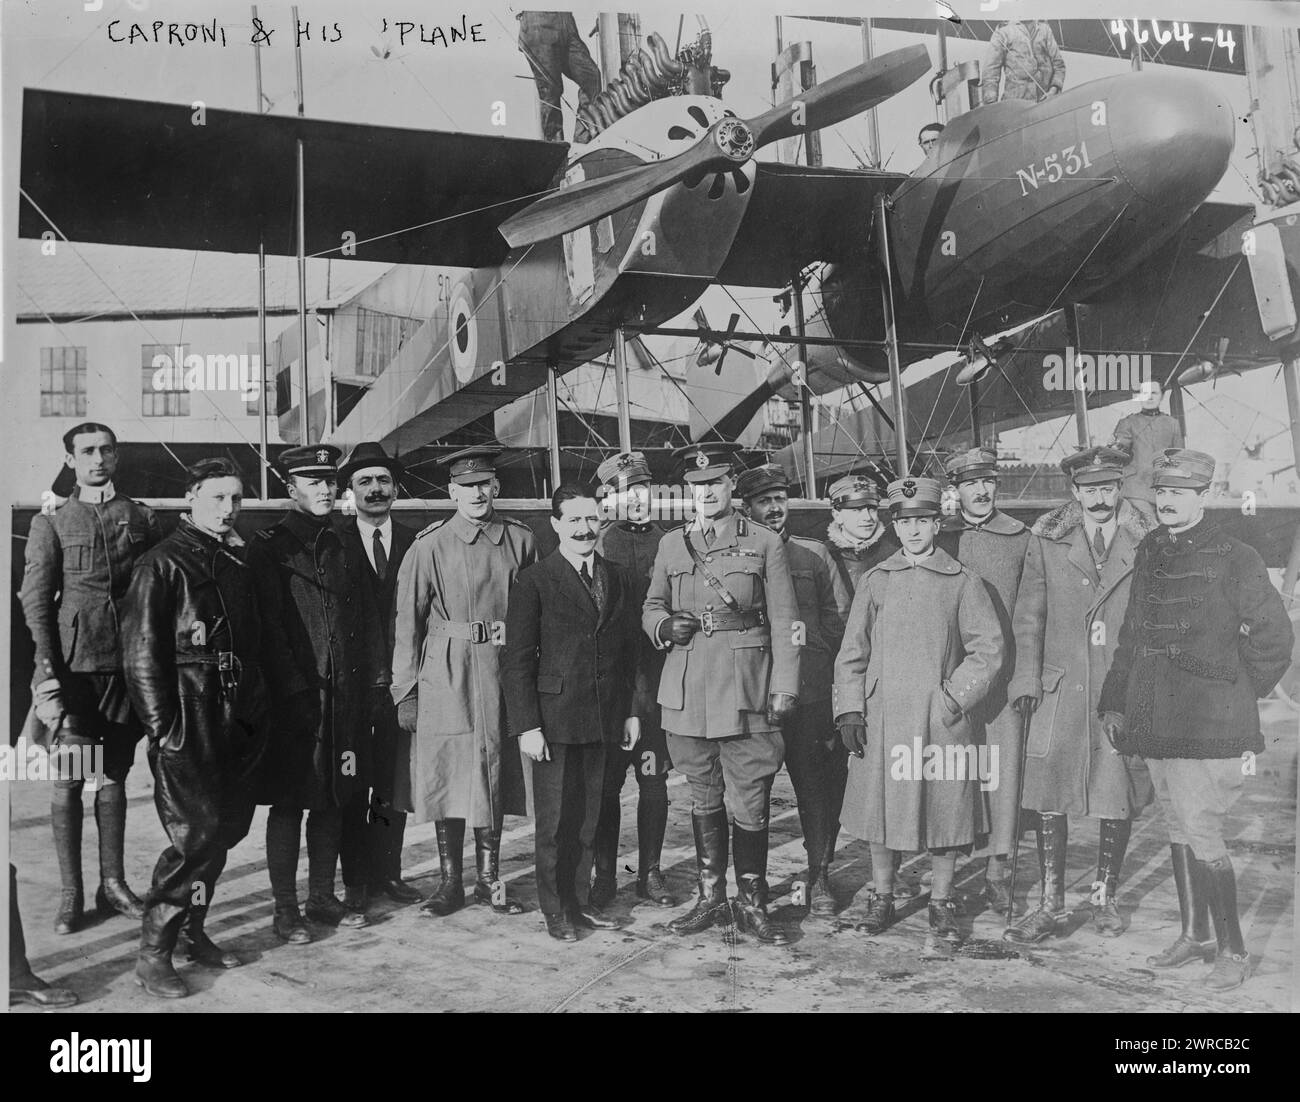 Caproni und sein Flugzeug, Foto zeigt Giovanni Battista Caproni (1886–1957), einen italienischen Luftfahrtingenieur und Gründer der Caproni Flugzeugfabrik mit einer Gruppe von Personen vor dem 'Caproni-Flug', einem riesigen Triplane-Bomber N531., 29. Juli 1918, Glass negative, 1 negative: Glass Stockfoto